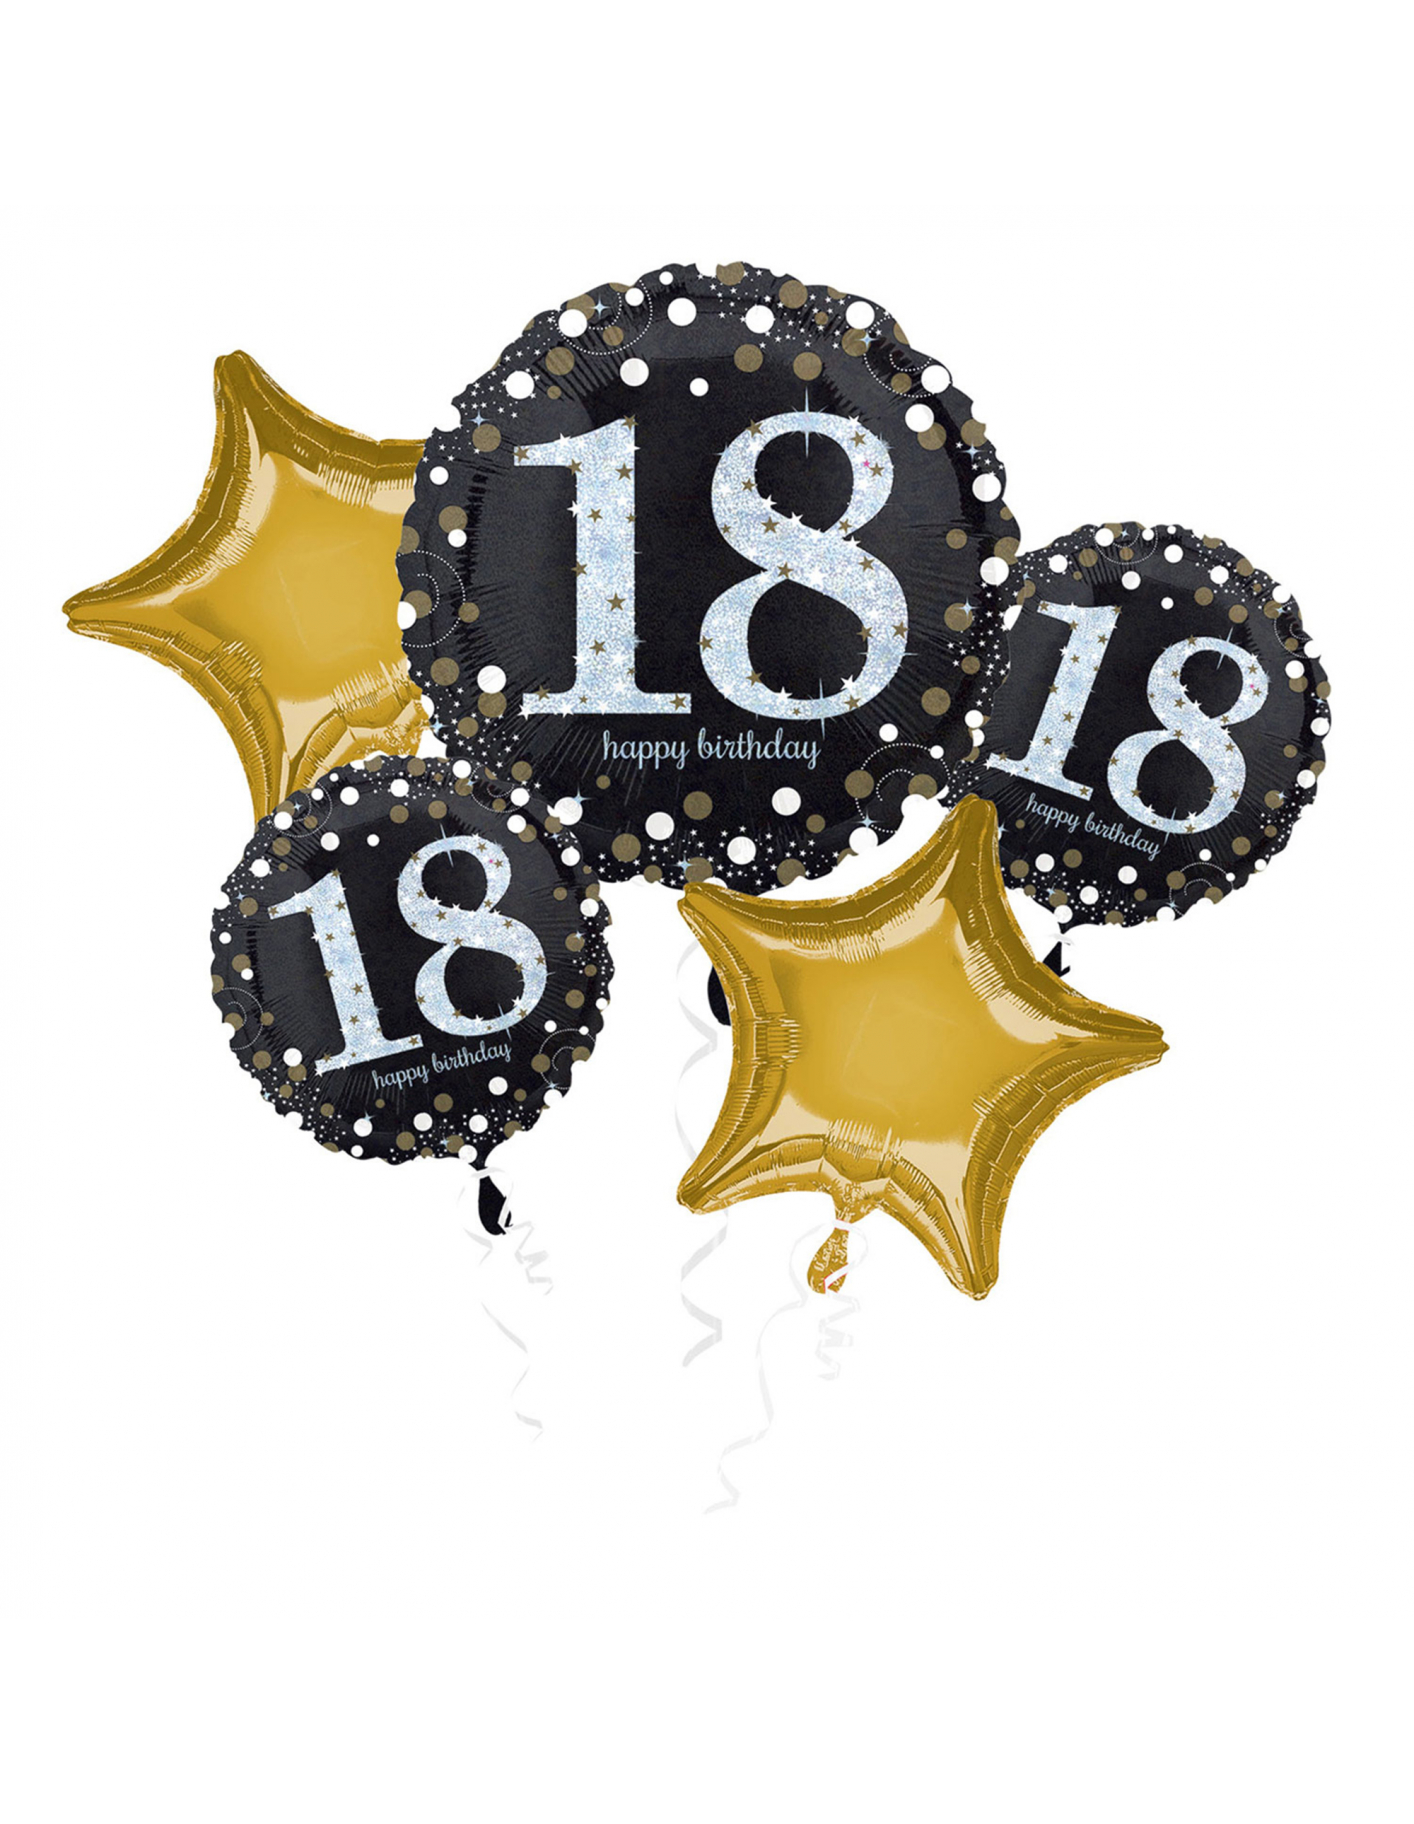 Kit Decoración Cumpleaños - Negro Y Dorado - 18 Años